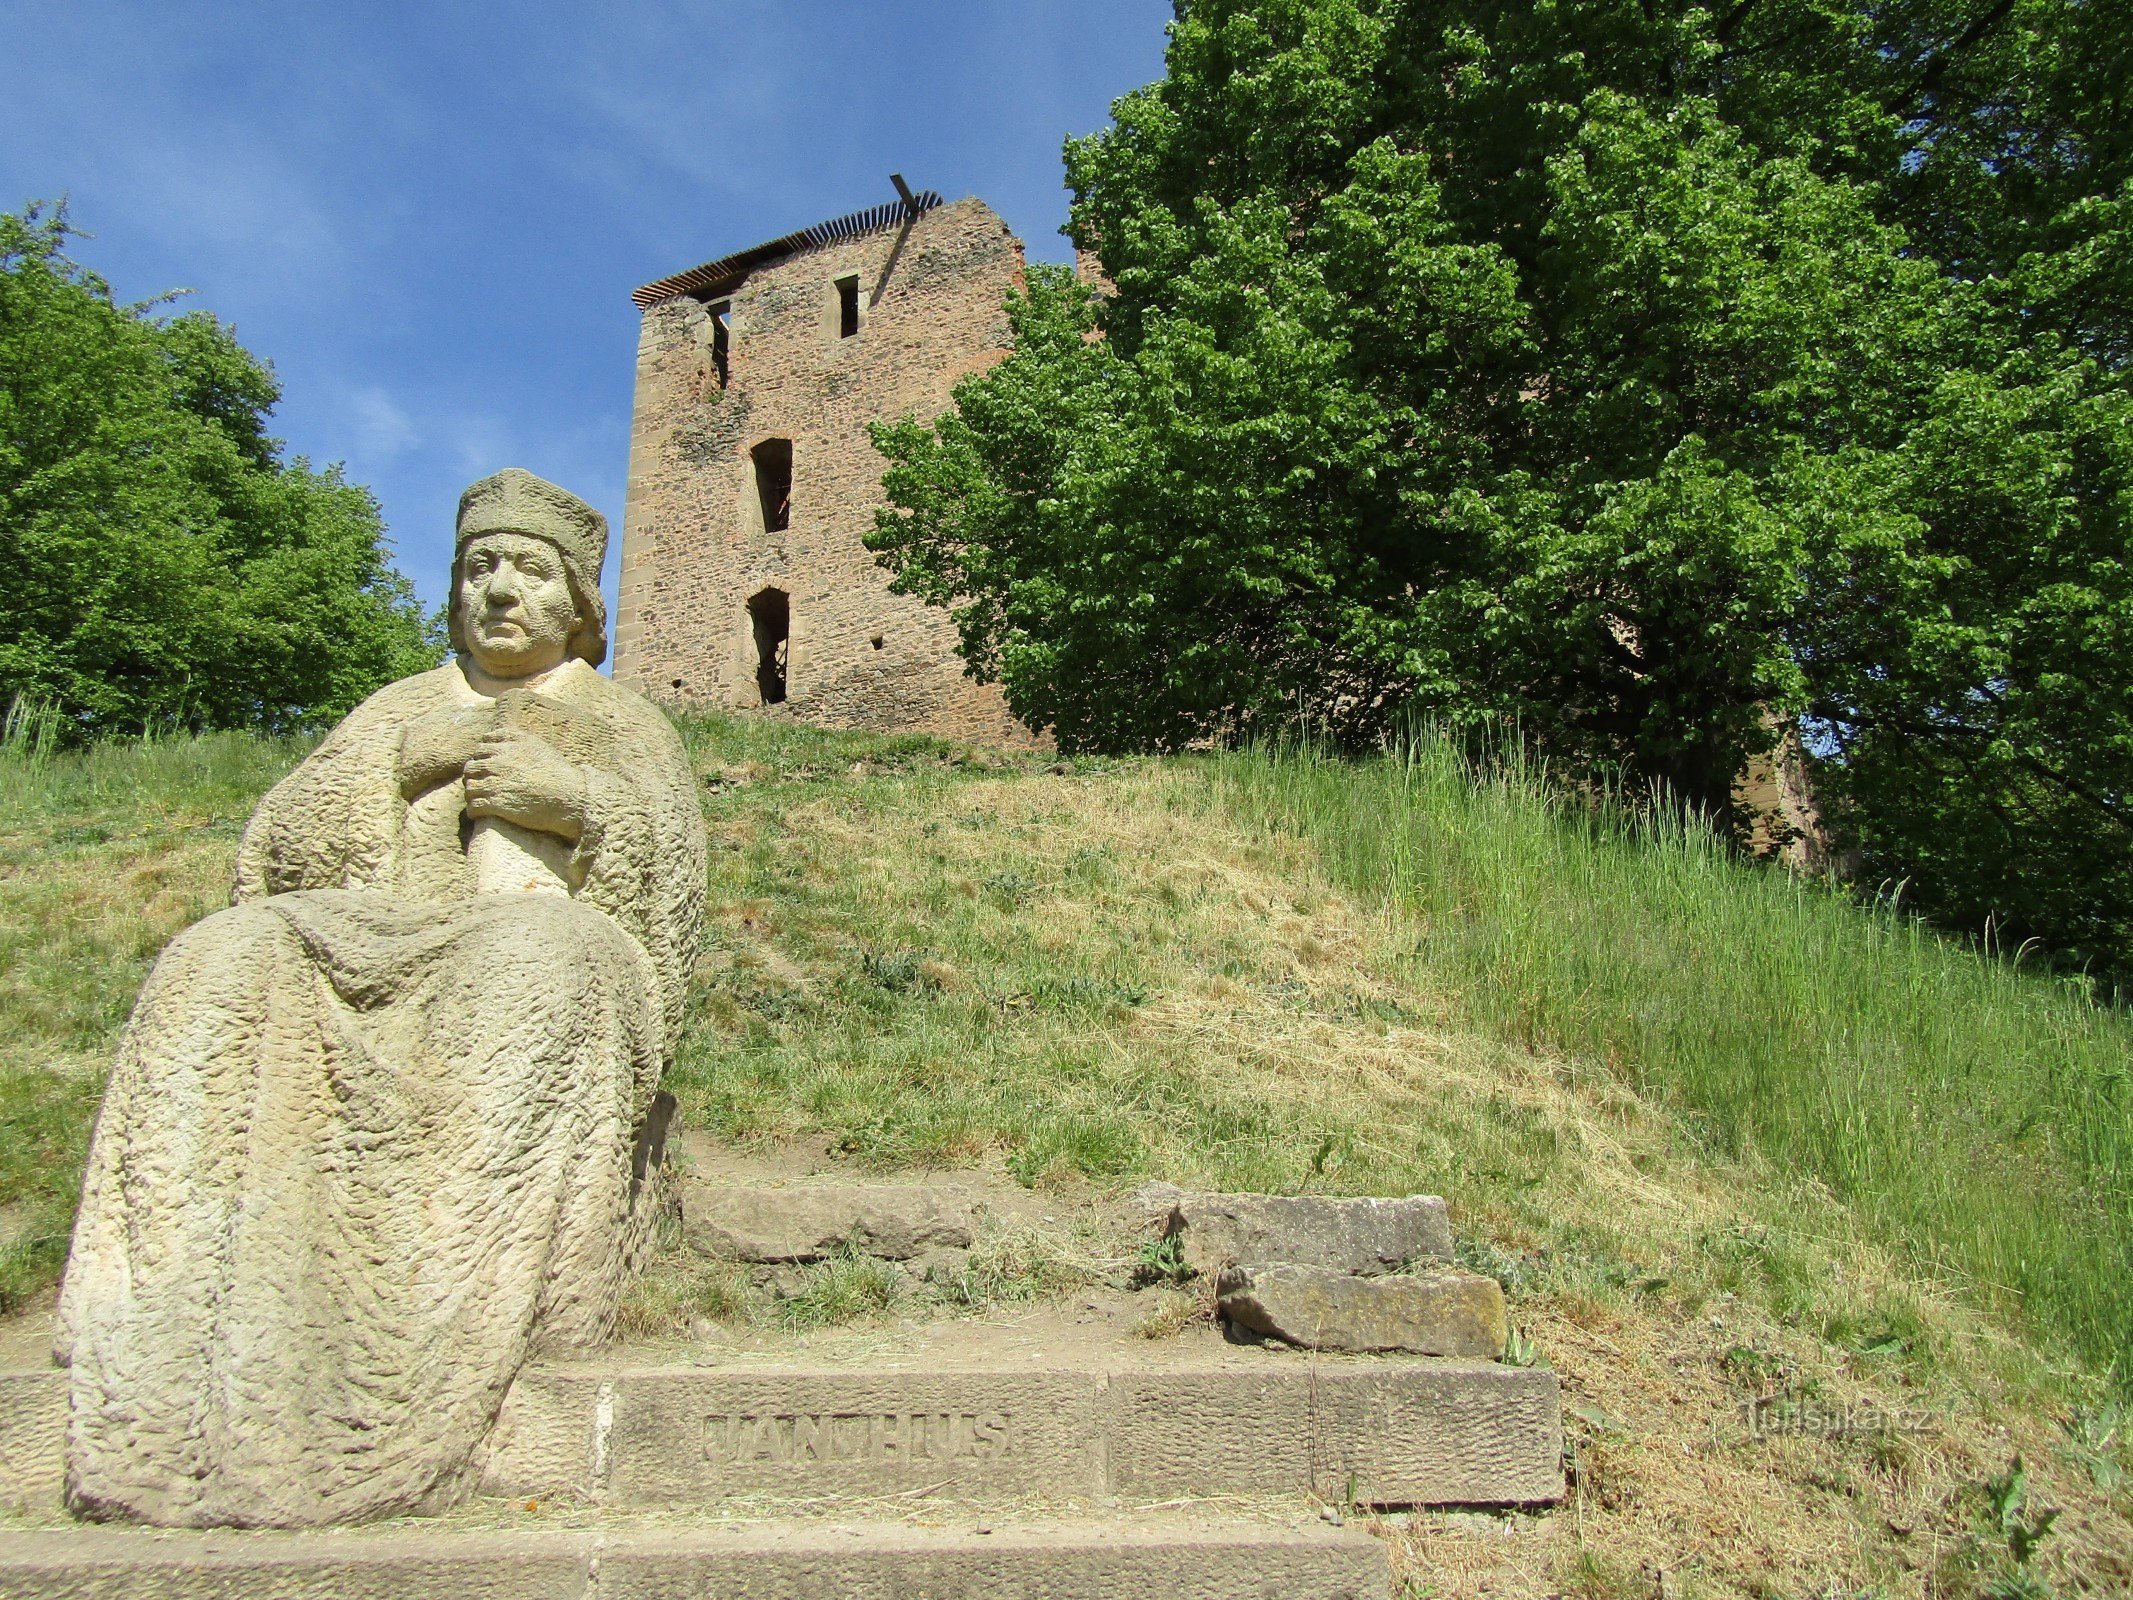 The ruins of Krakovec Castle